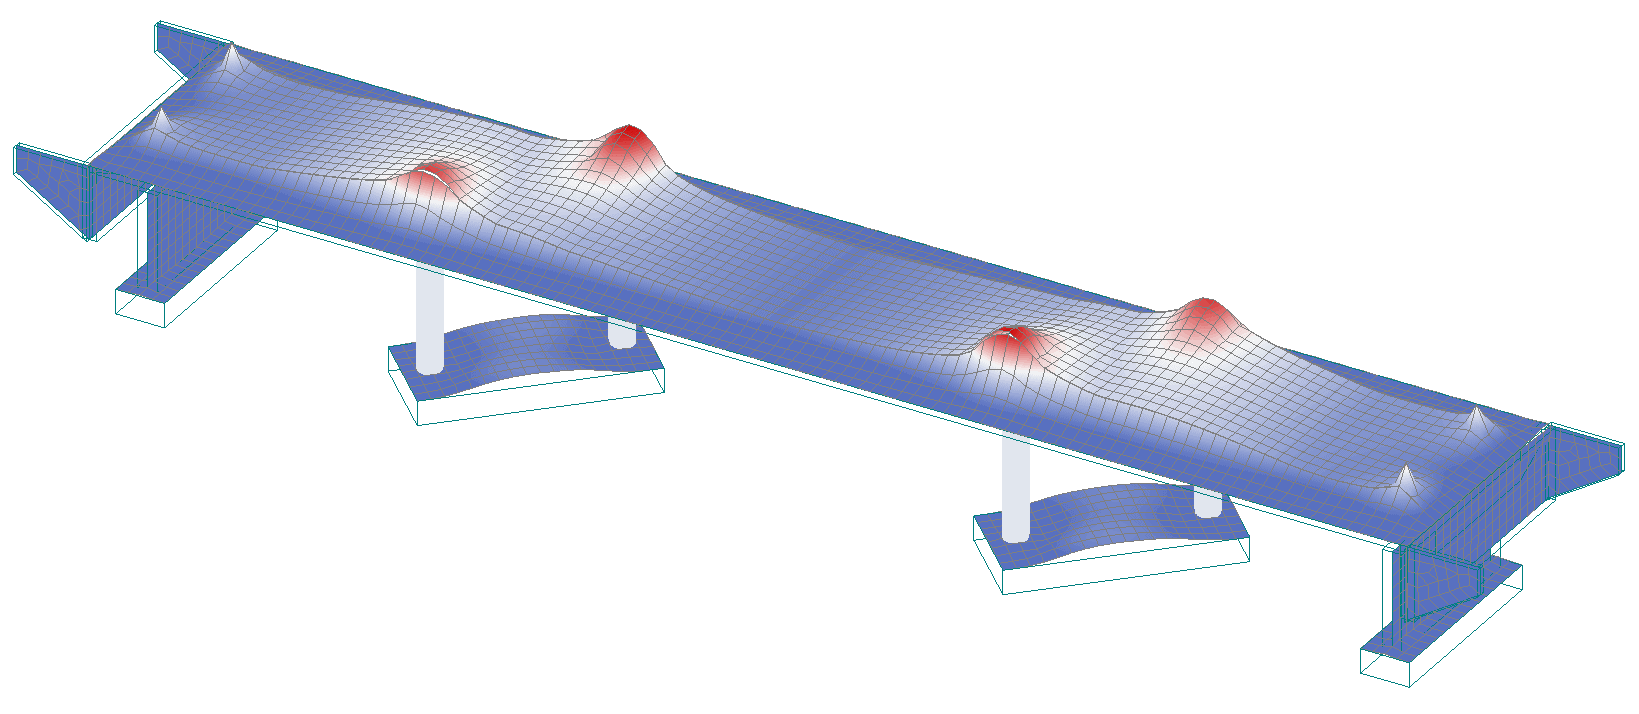 FEM-Design 3D Bridge